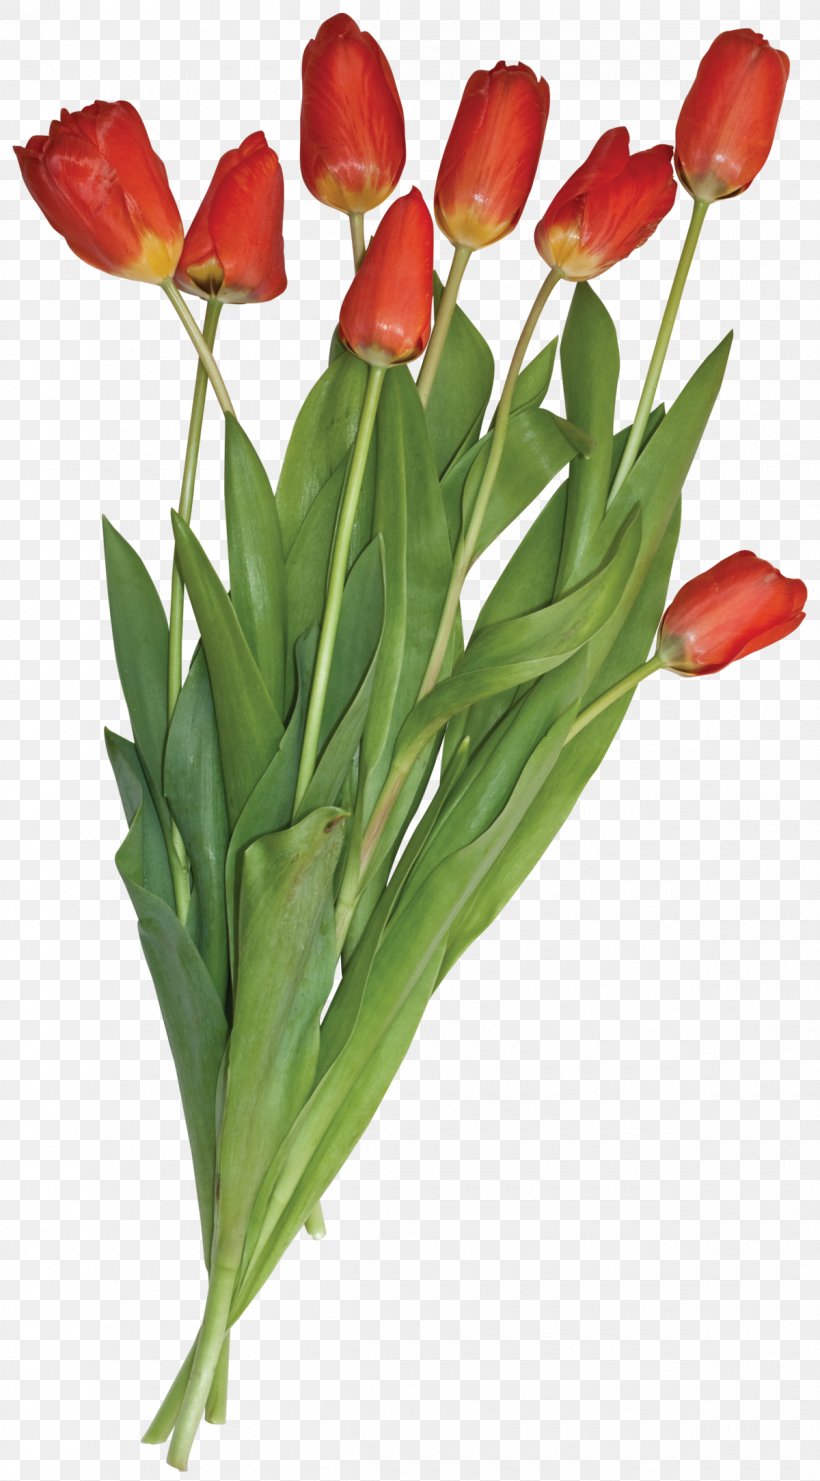 Tulip Flower Bouquet Clip Art, PNG, 1200x2168px, Tulip, Cut Flowers, Designer, Digital Image, Floral Design Download Free